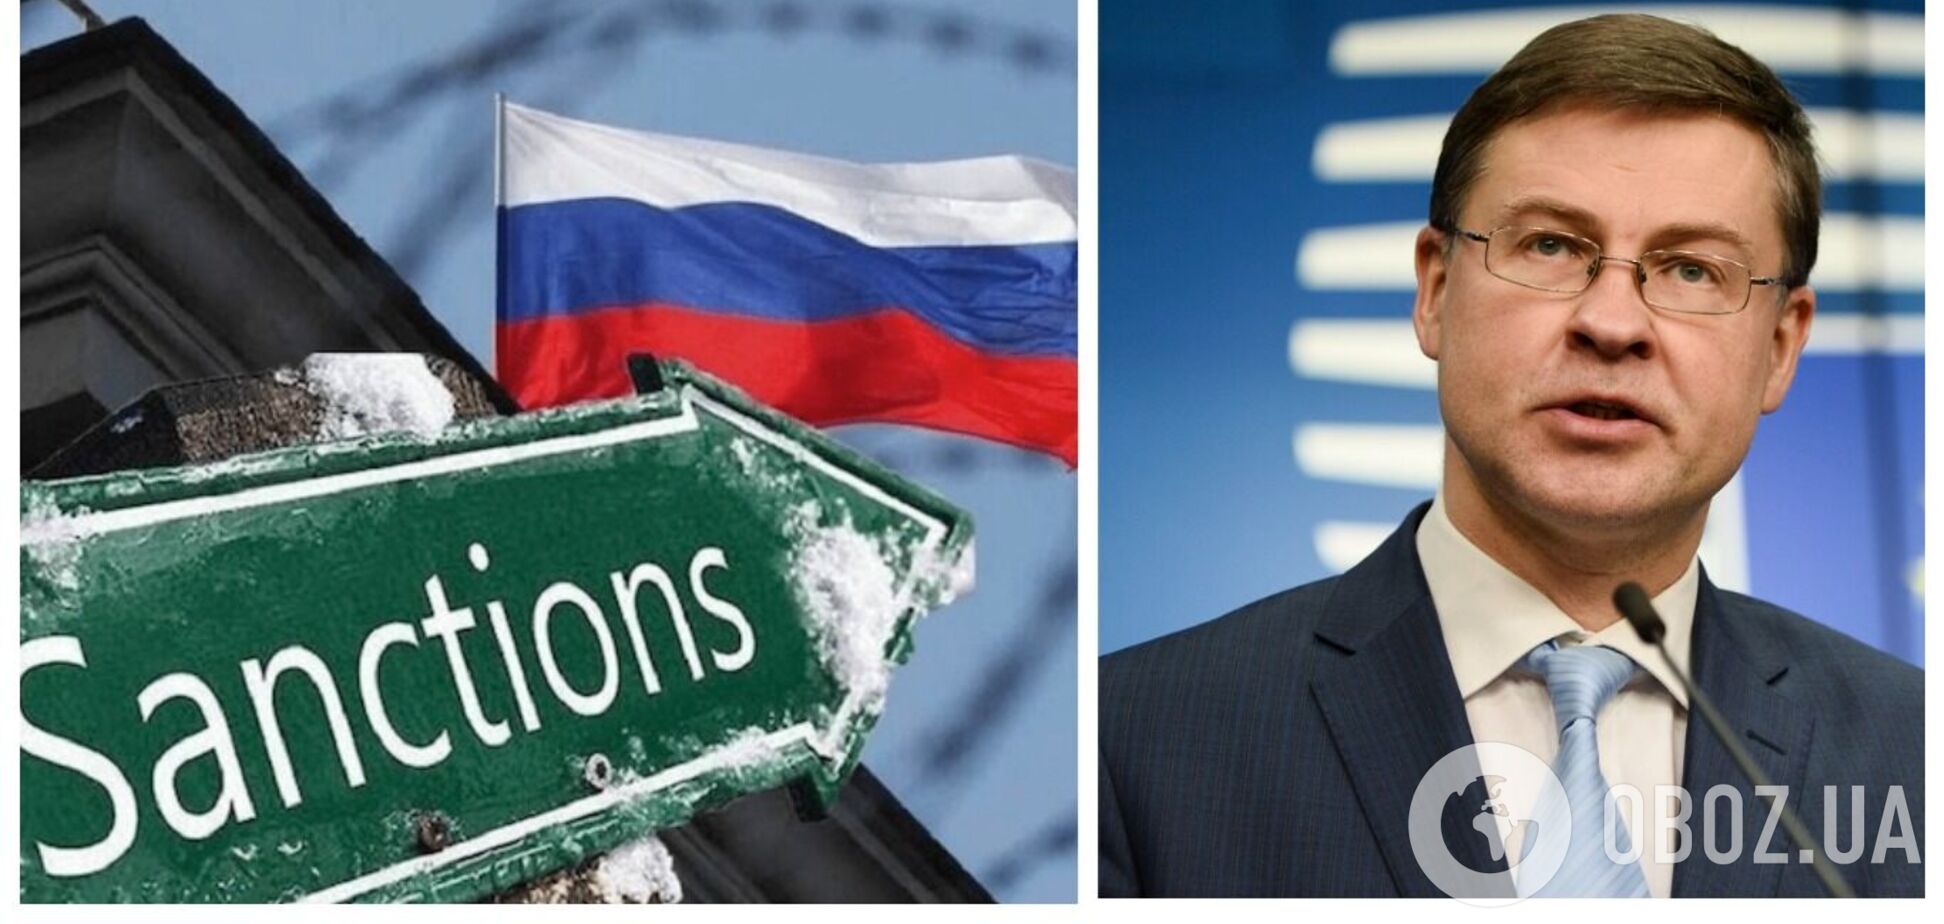 В Еврокомиссии рассказали о подготовке санкций против РФ: важно, чтобы у нас был единый ответ